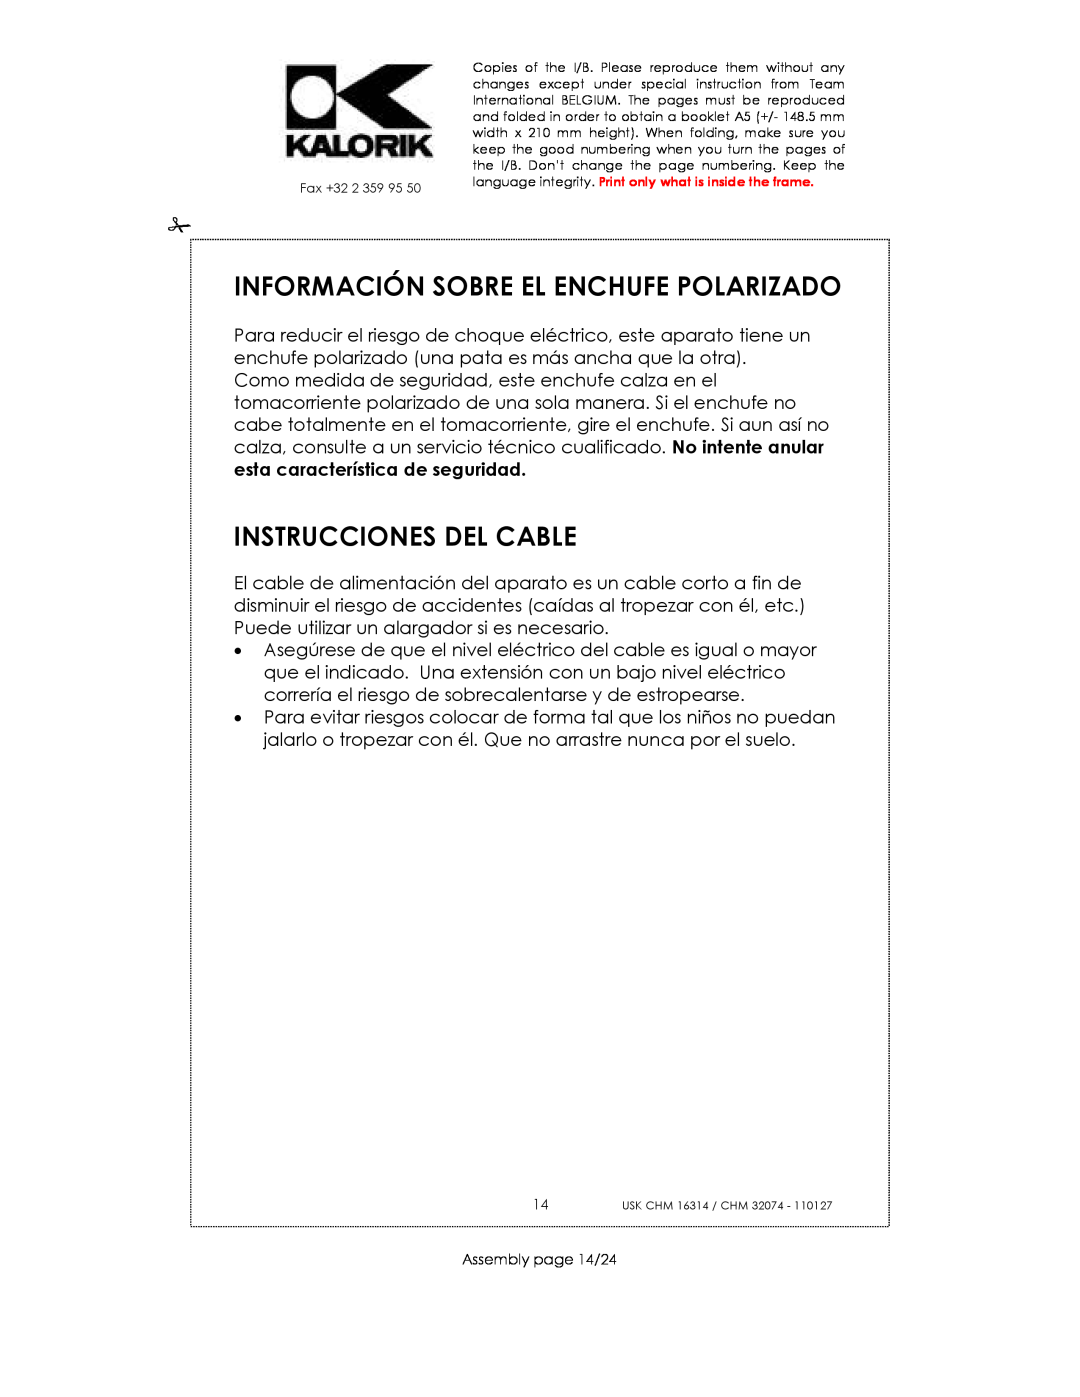 Kalorik CHM 16314, CHM 32074 manual Información Sobre El Enchufe Polarizado, Instrucciones Del Cable, Assembly page 14/24 